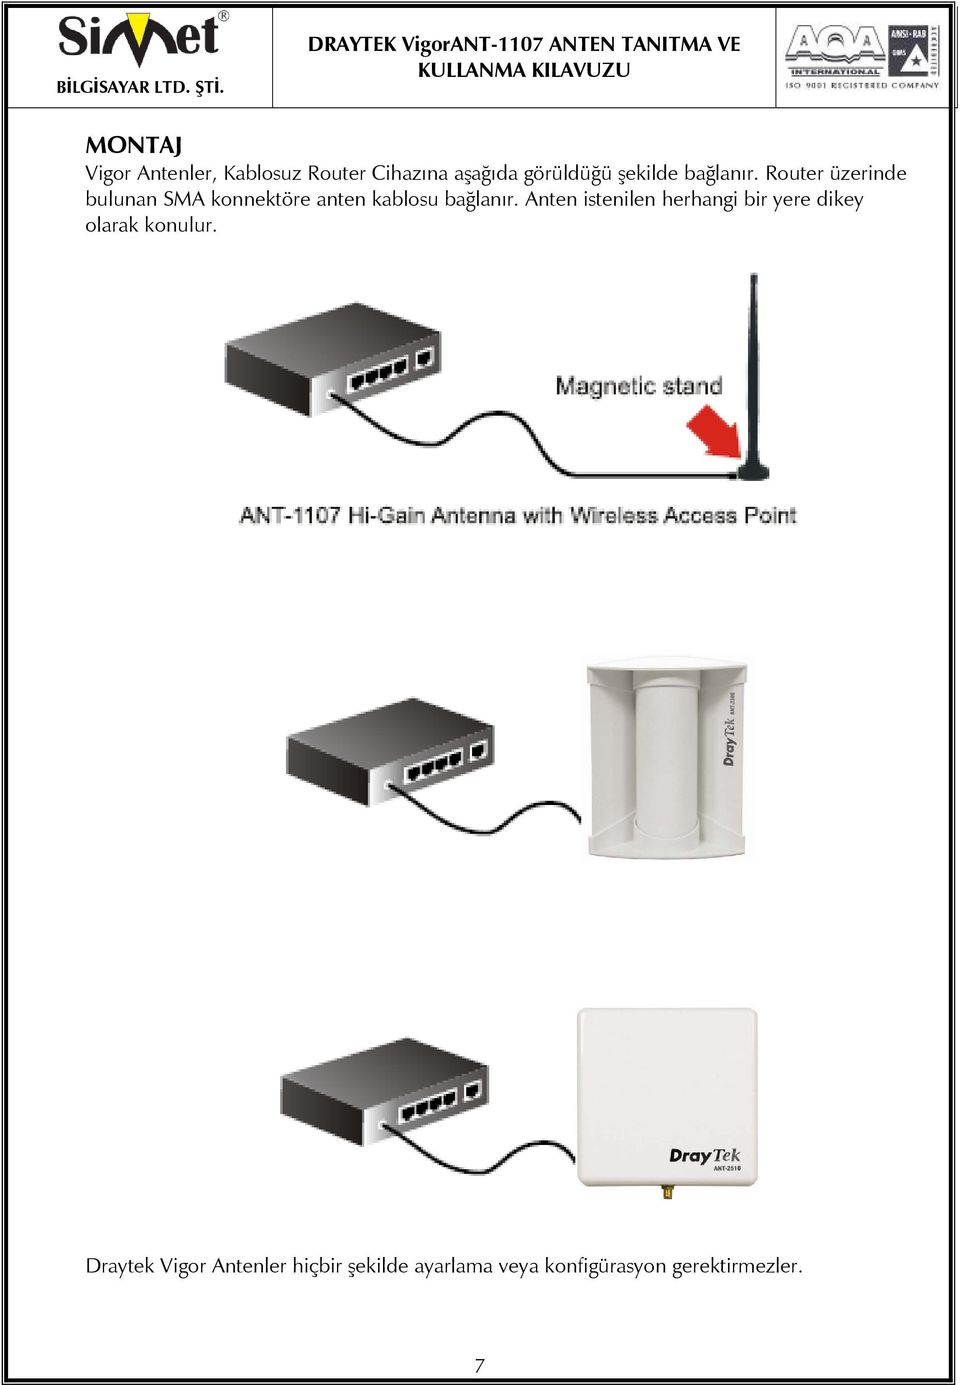 Router üzerinde bulunan SMA konnektöre anten kablosu bağlanır.